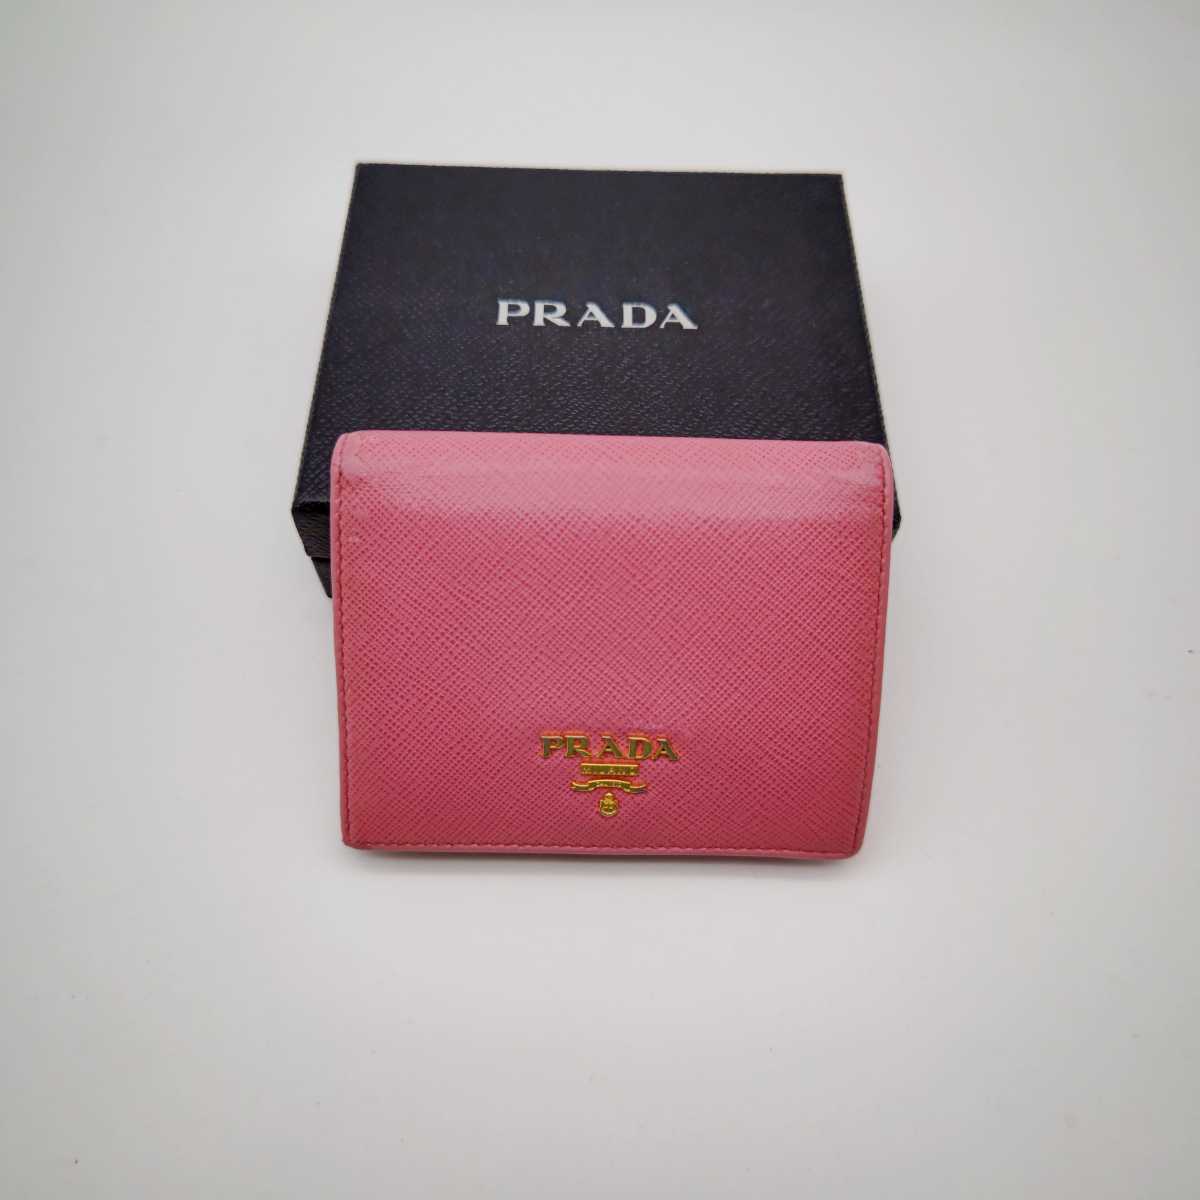 美人姉妹 PRADA 新品未使用 ピンク 財布 プラダ 折り財布